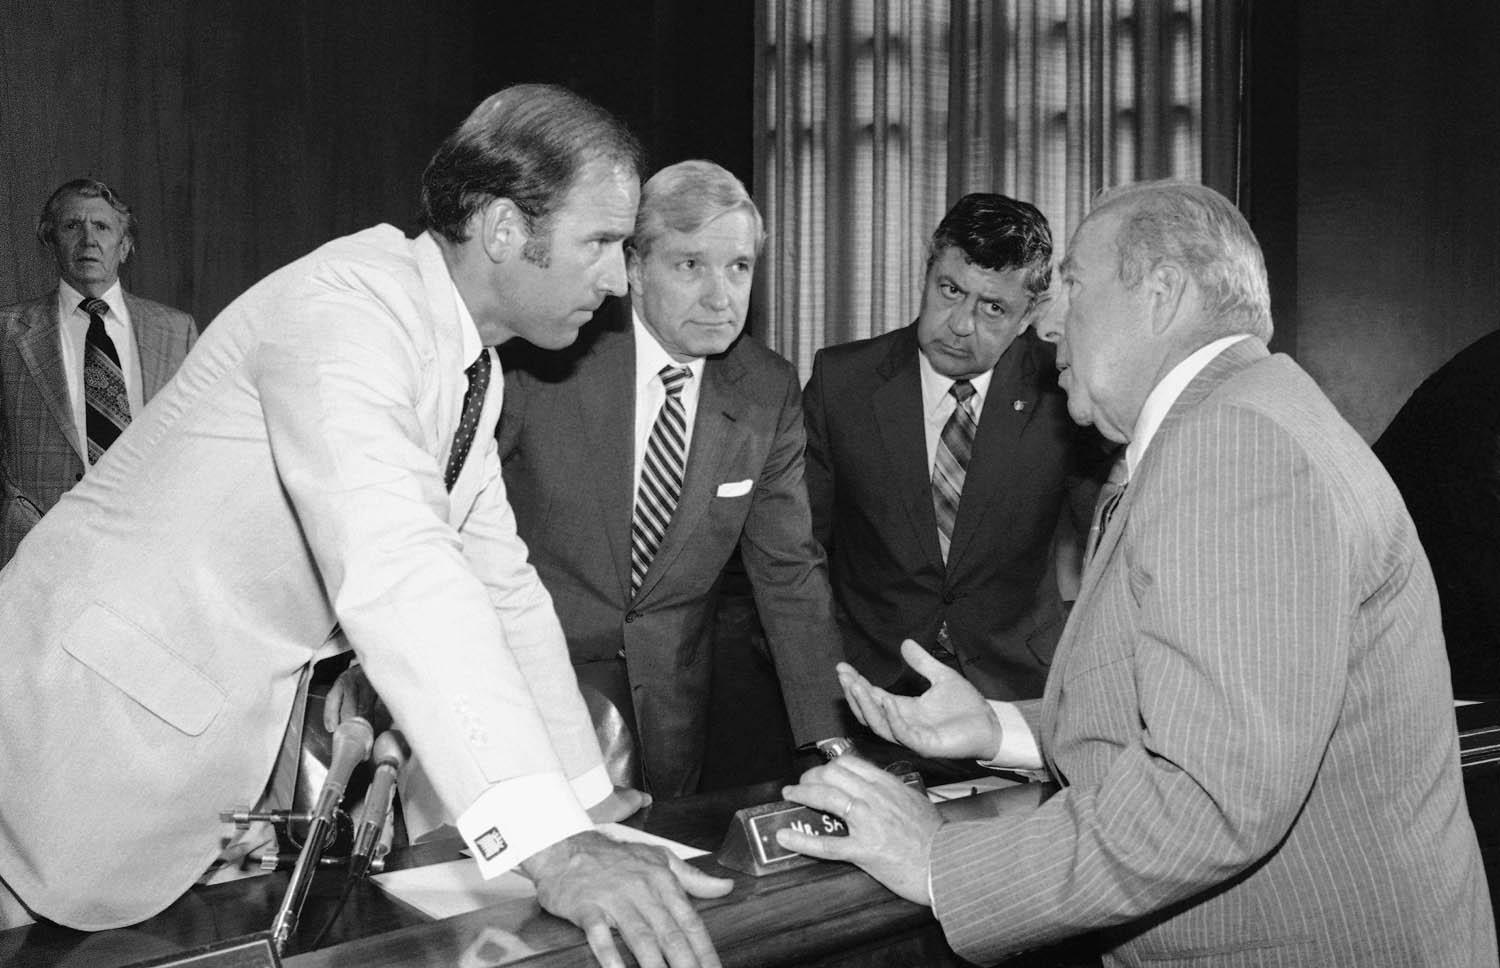 الرئيس الأميركي جو بادين في نقاش مع وزير الخارجية جورج شولتز (1982)